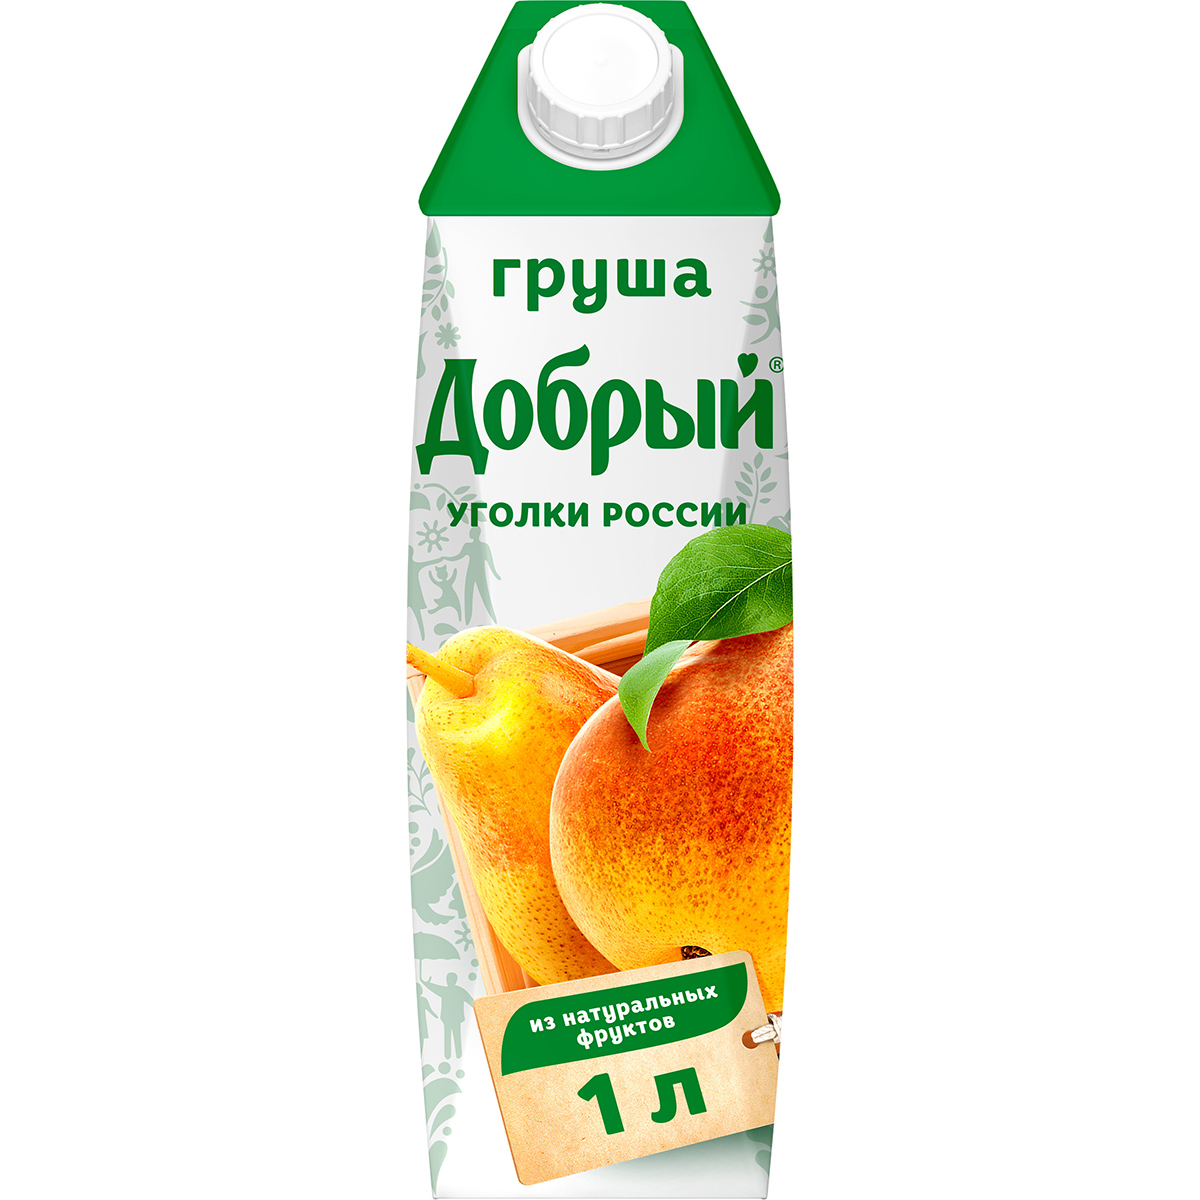 Нектар Добрый Уголки России Груша 1 л нектар добрый апельсин 0 3 литра пэт 12 шт в уп